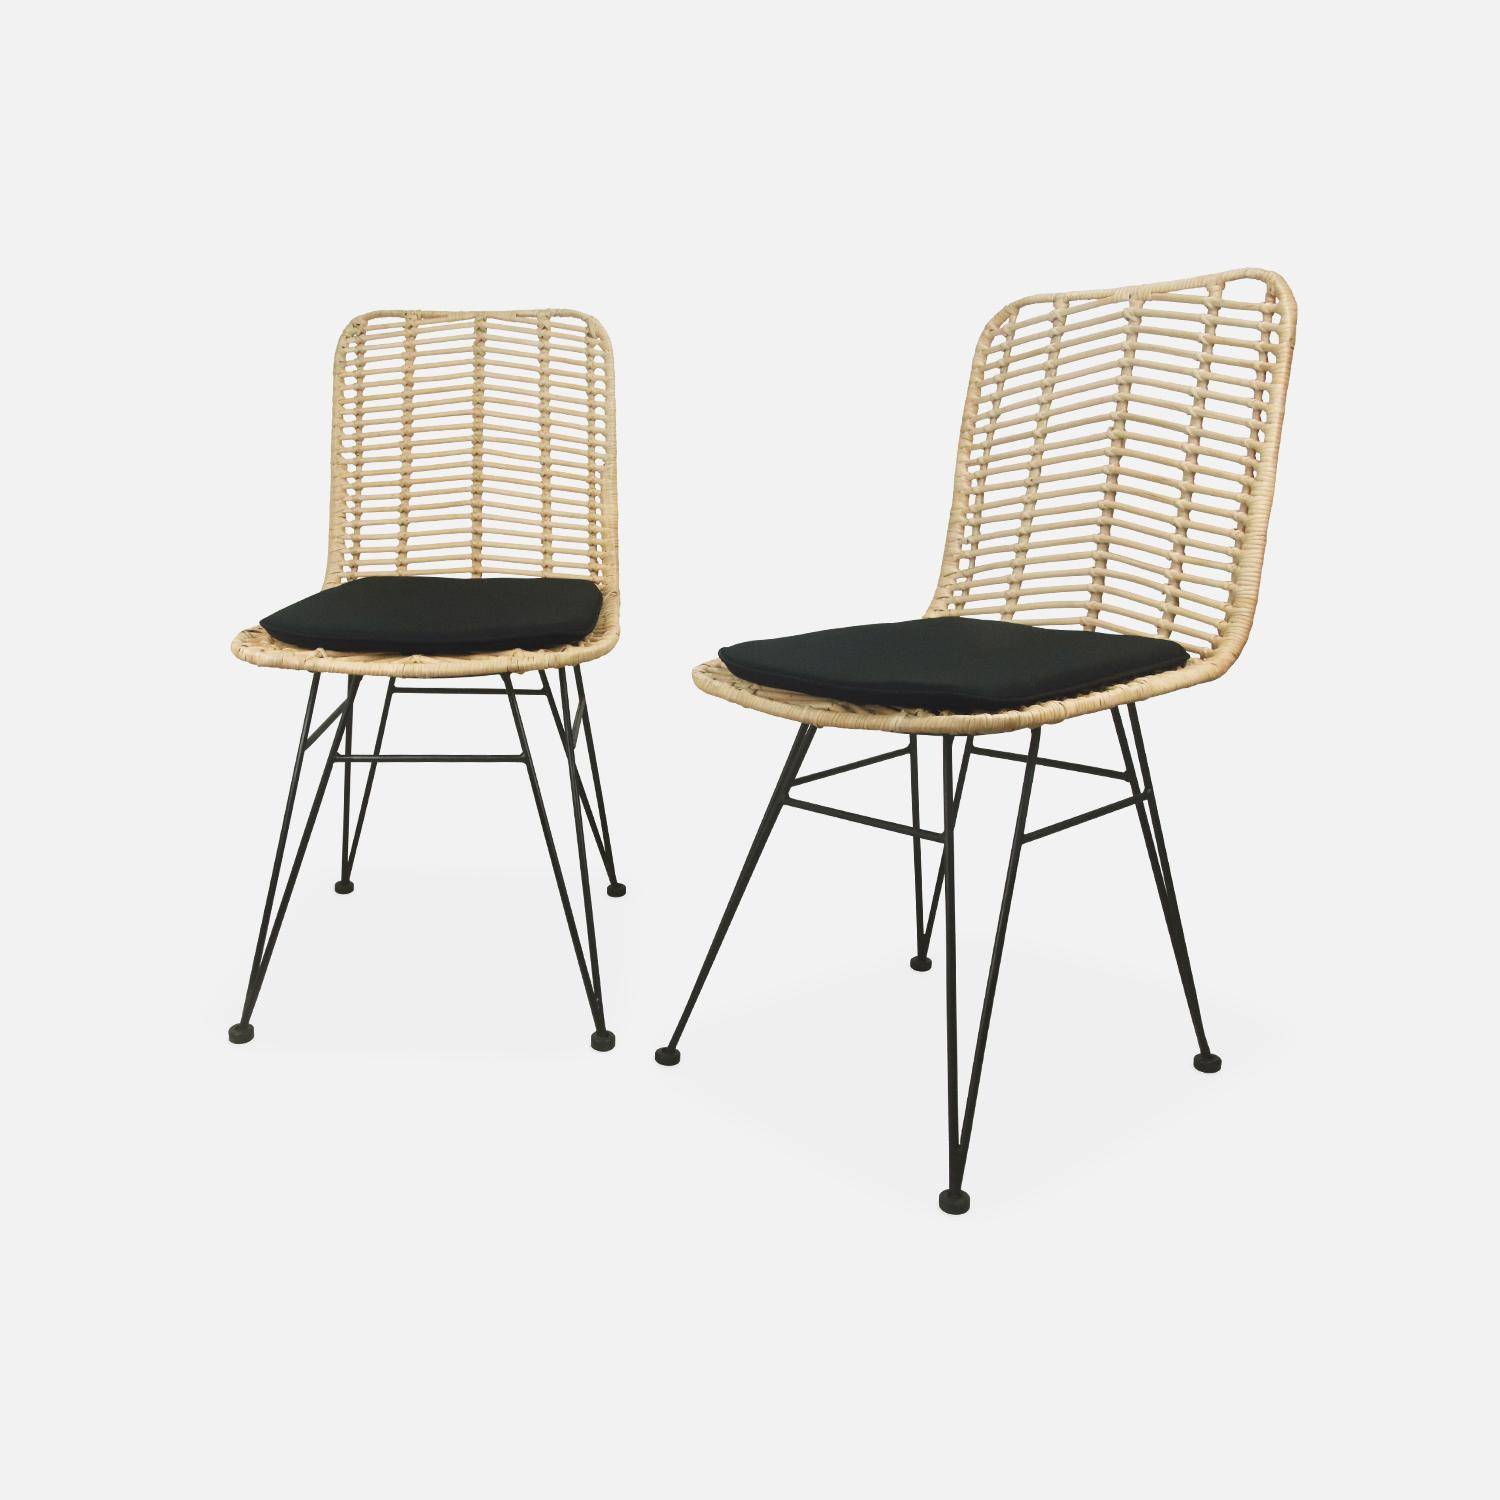 Deux chaises en rotin naturel et métal, coussins noirs - Cahya Photo3